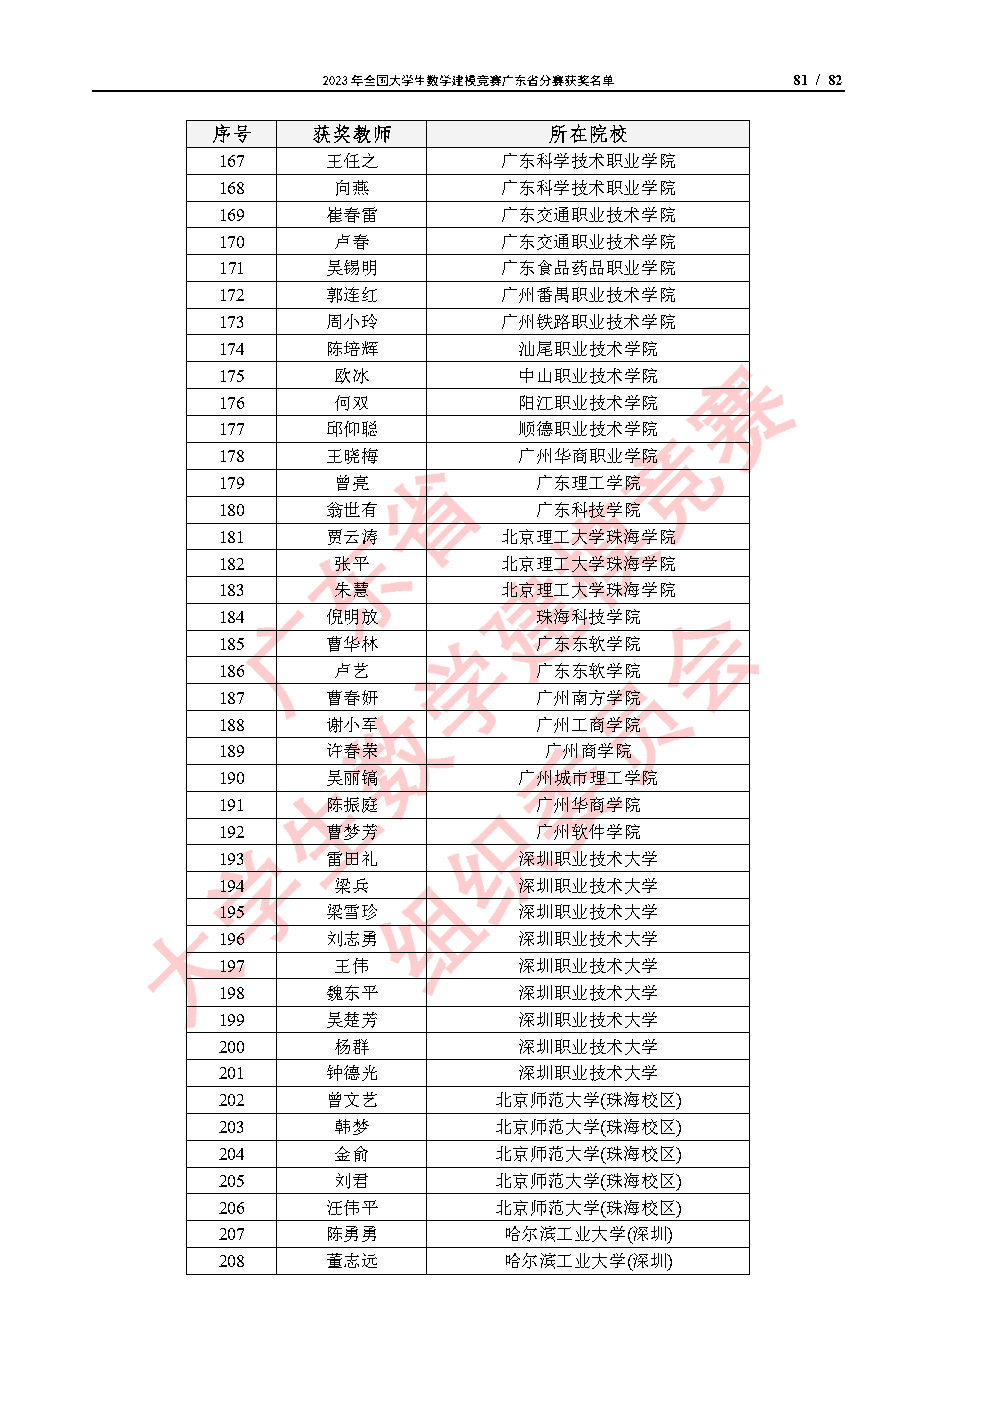 2023年全国大学生数学建模竞赛广东省分赛获奖名单_Page81.jpg